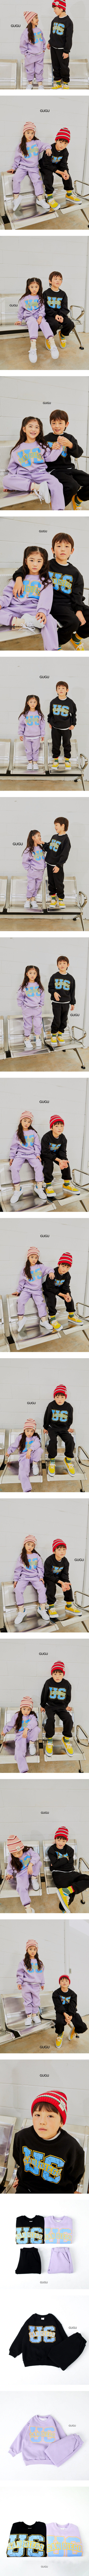 Gugu Kids - Korean Children Fashion - #littlefashionista - UC Sandiago Top Bottom Set